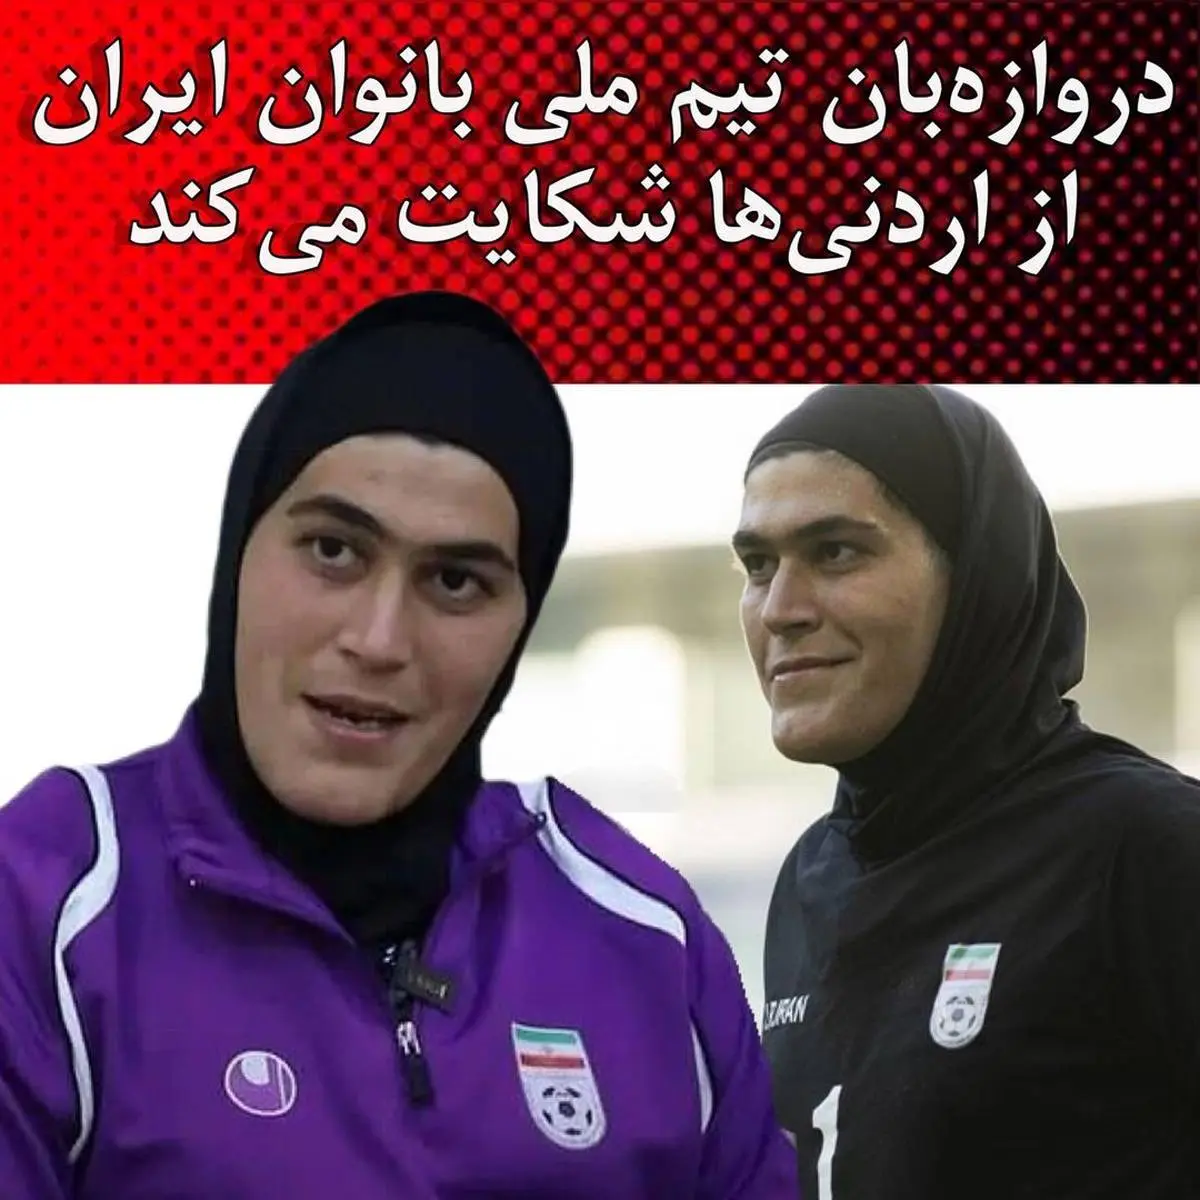 جنجال جنسیتی در تیم ملی فوتبال برای زهره کودایی | اشک های مادر زهره کودایی